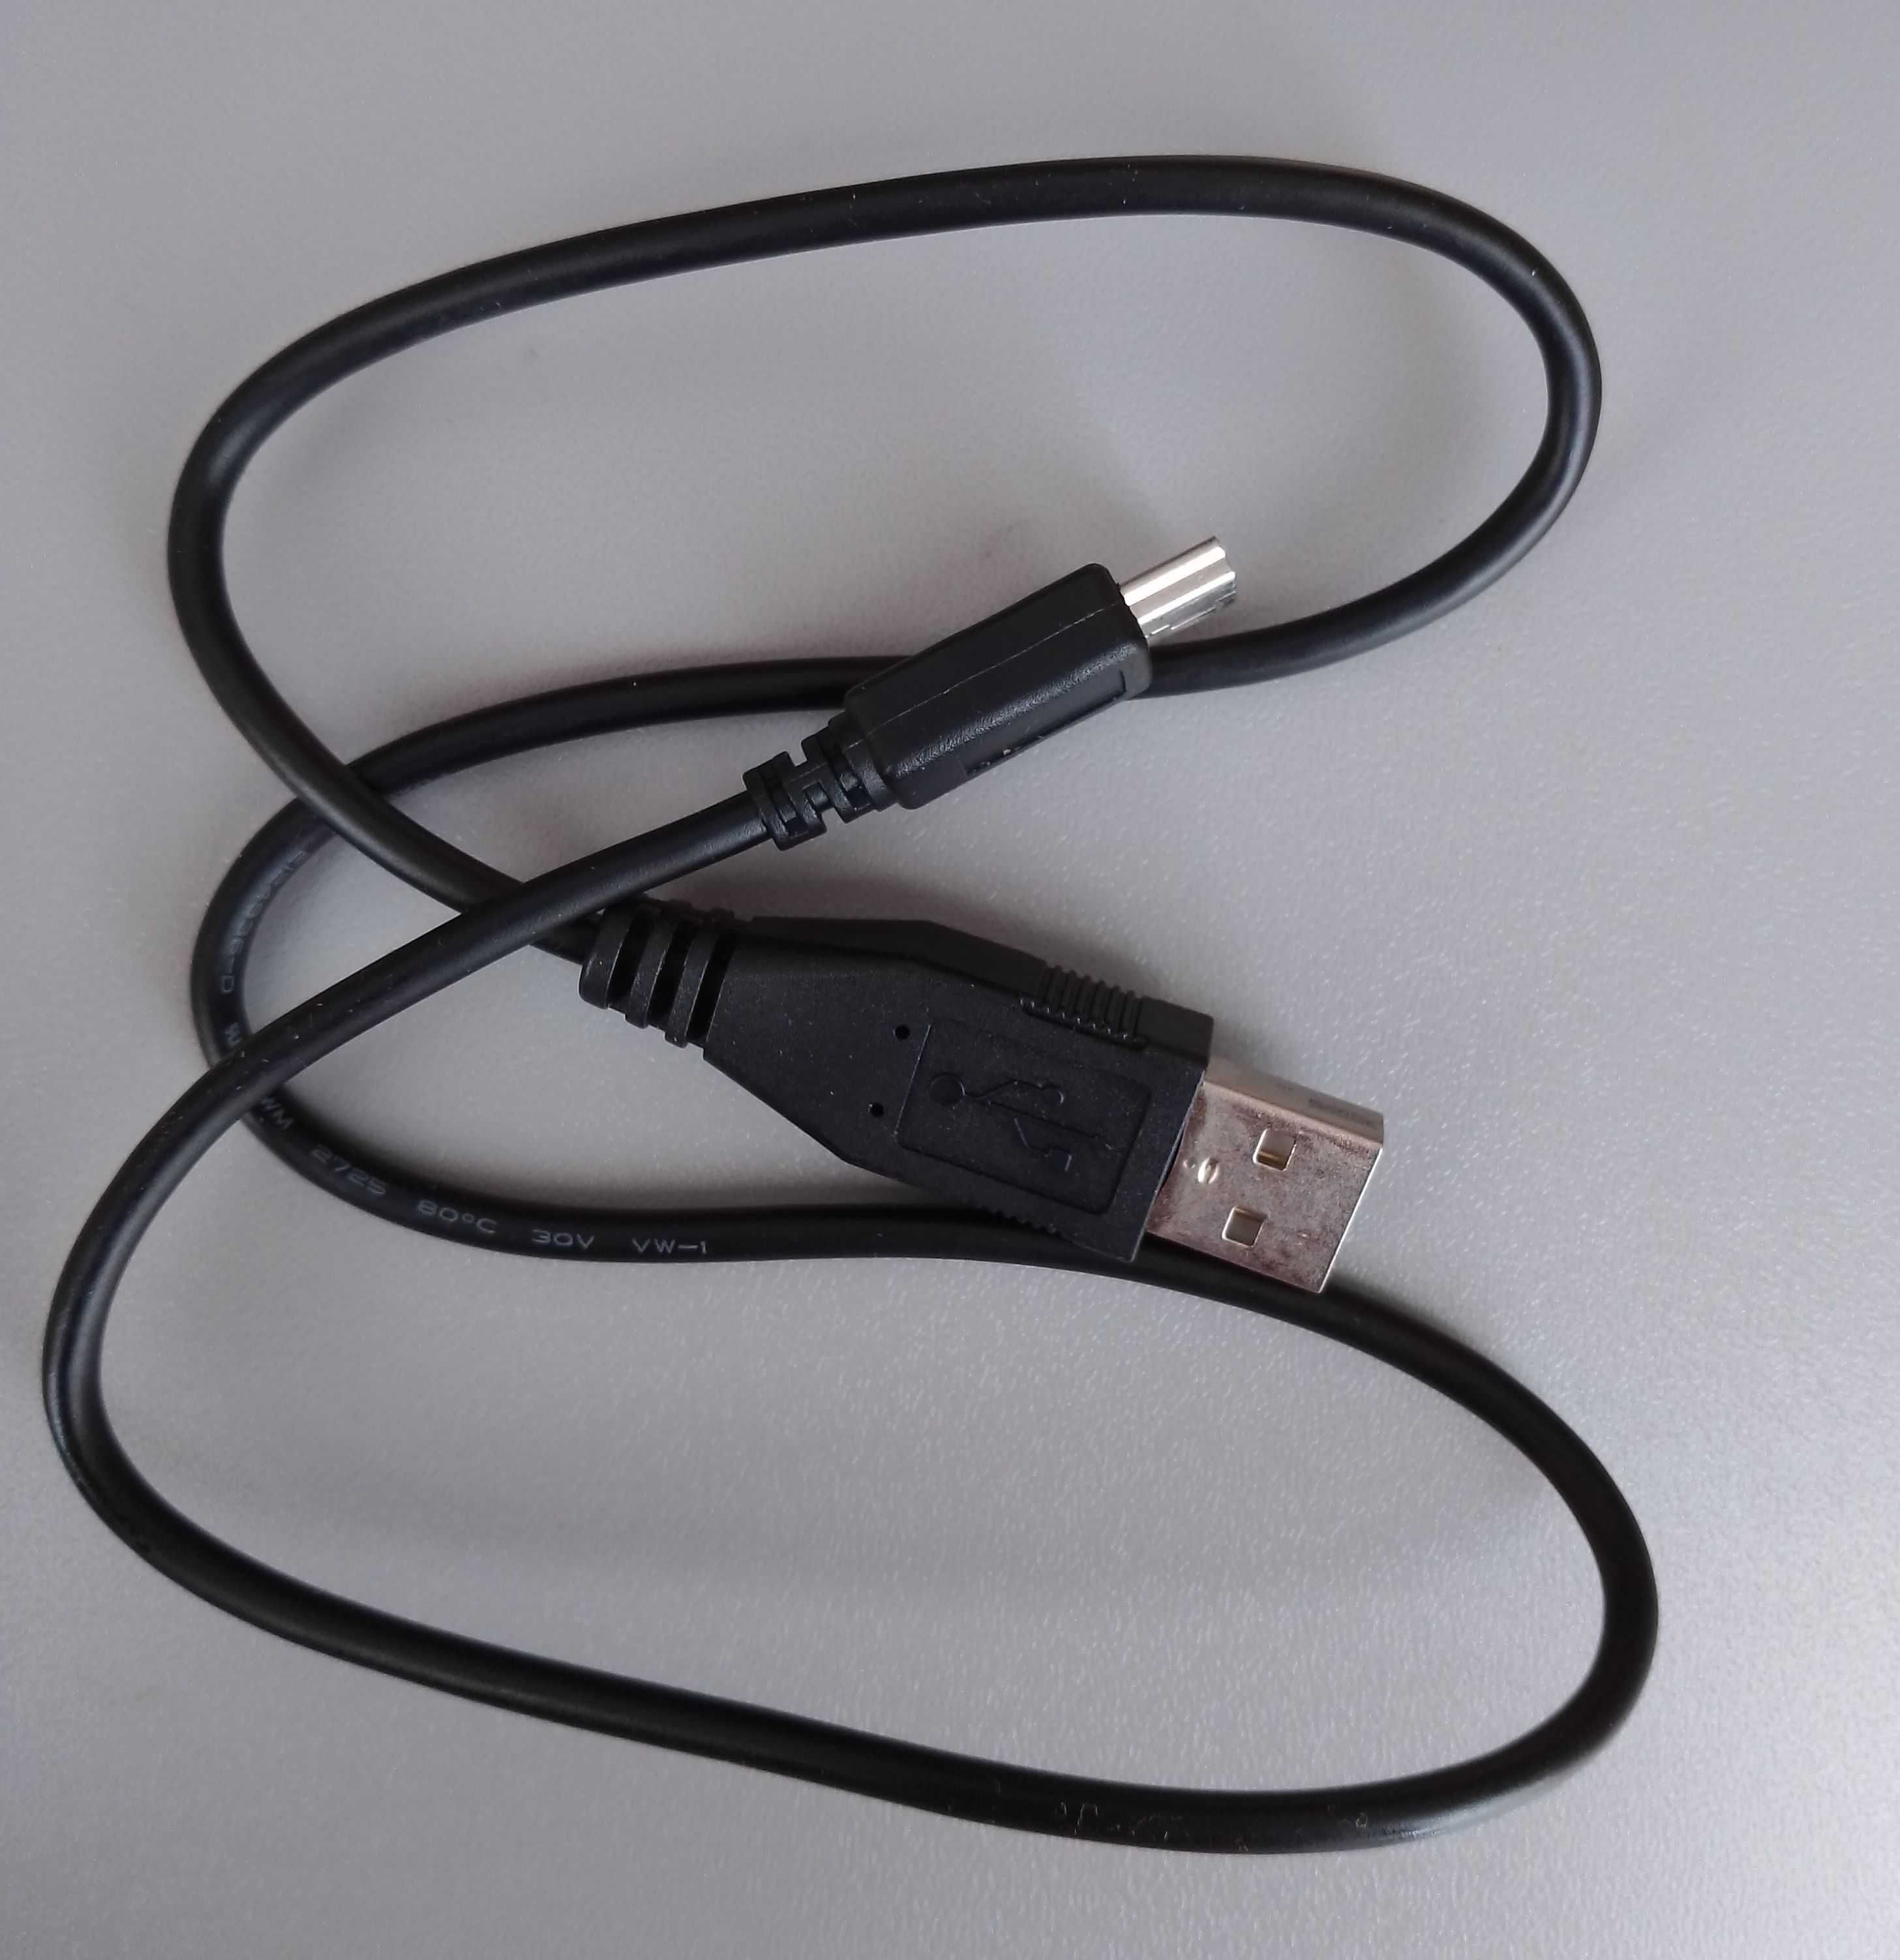 USB-кабель для фотоаппарата